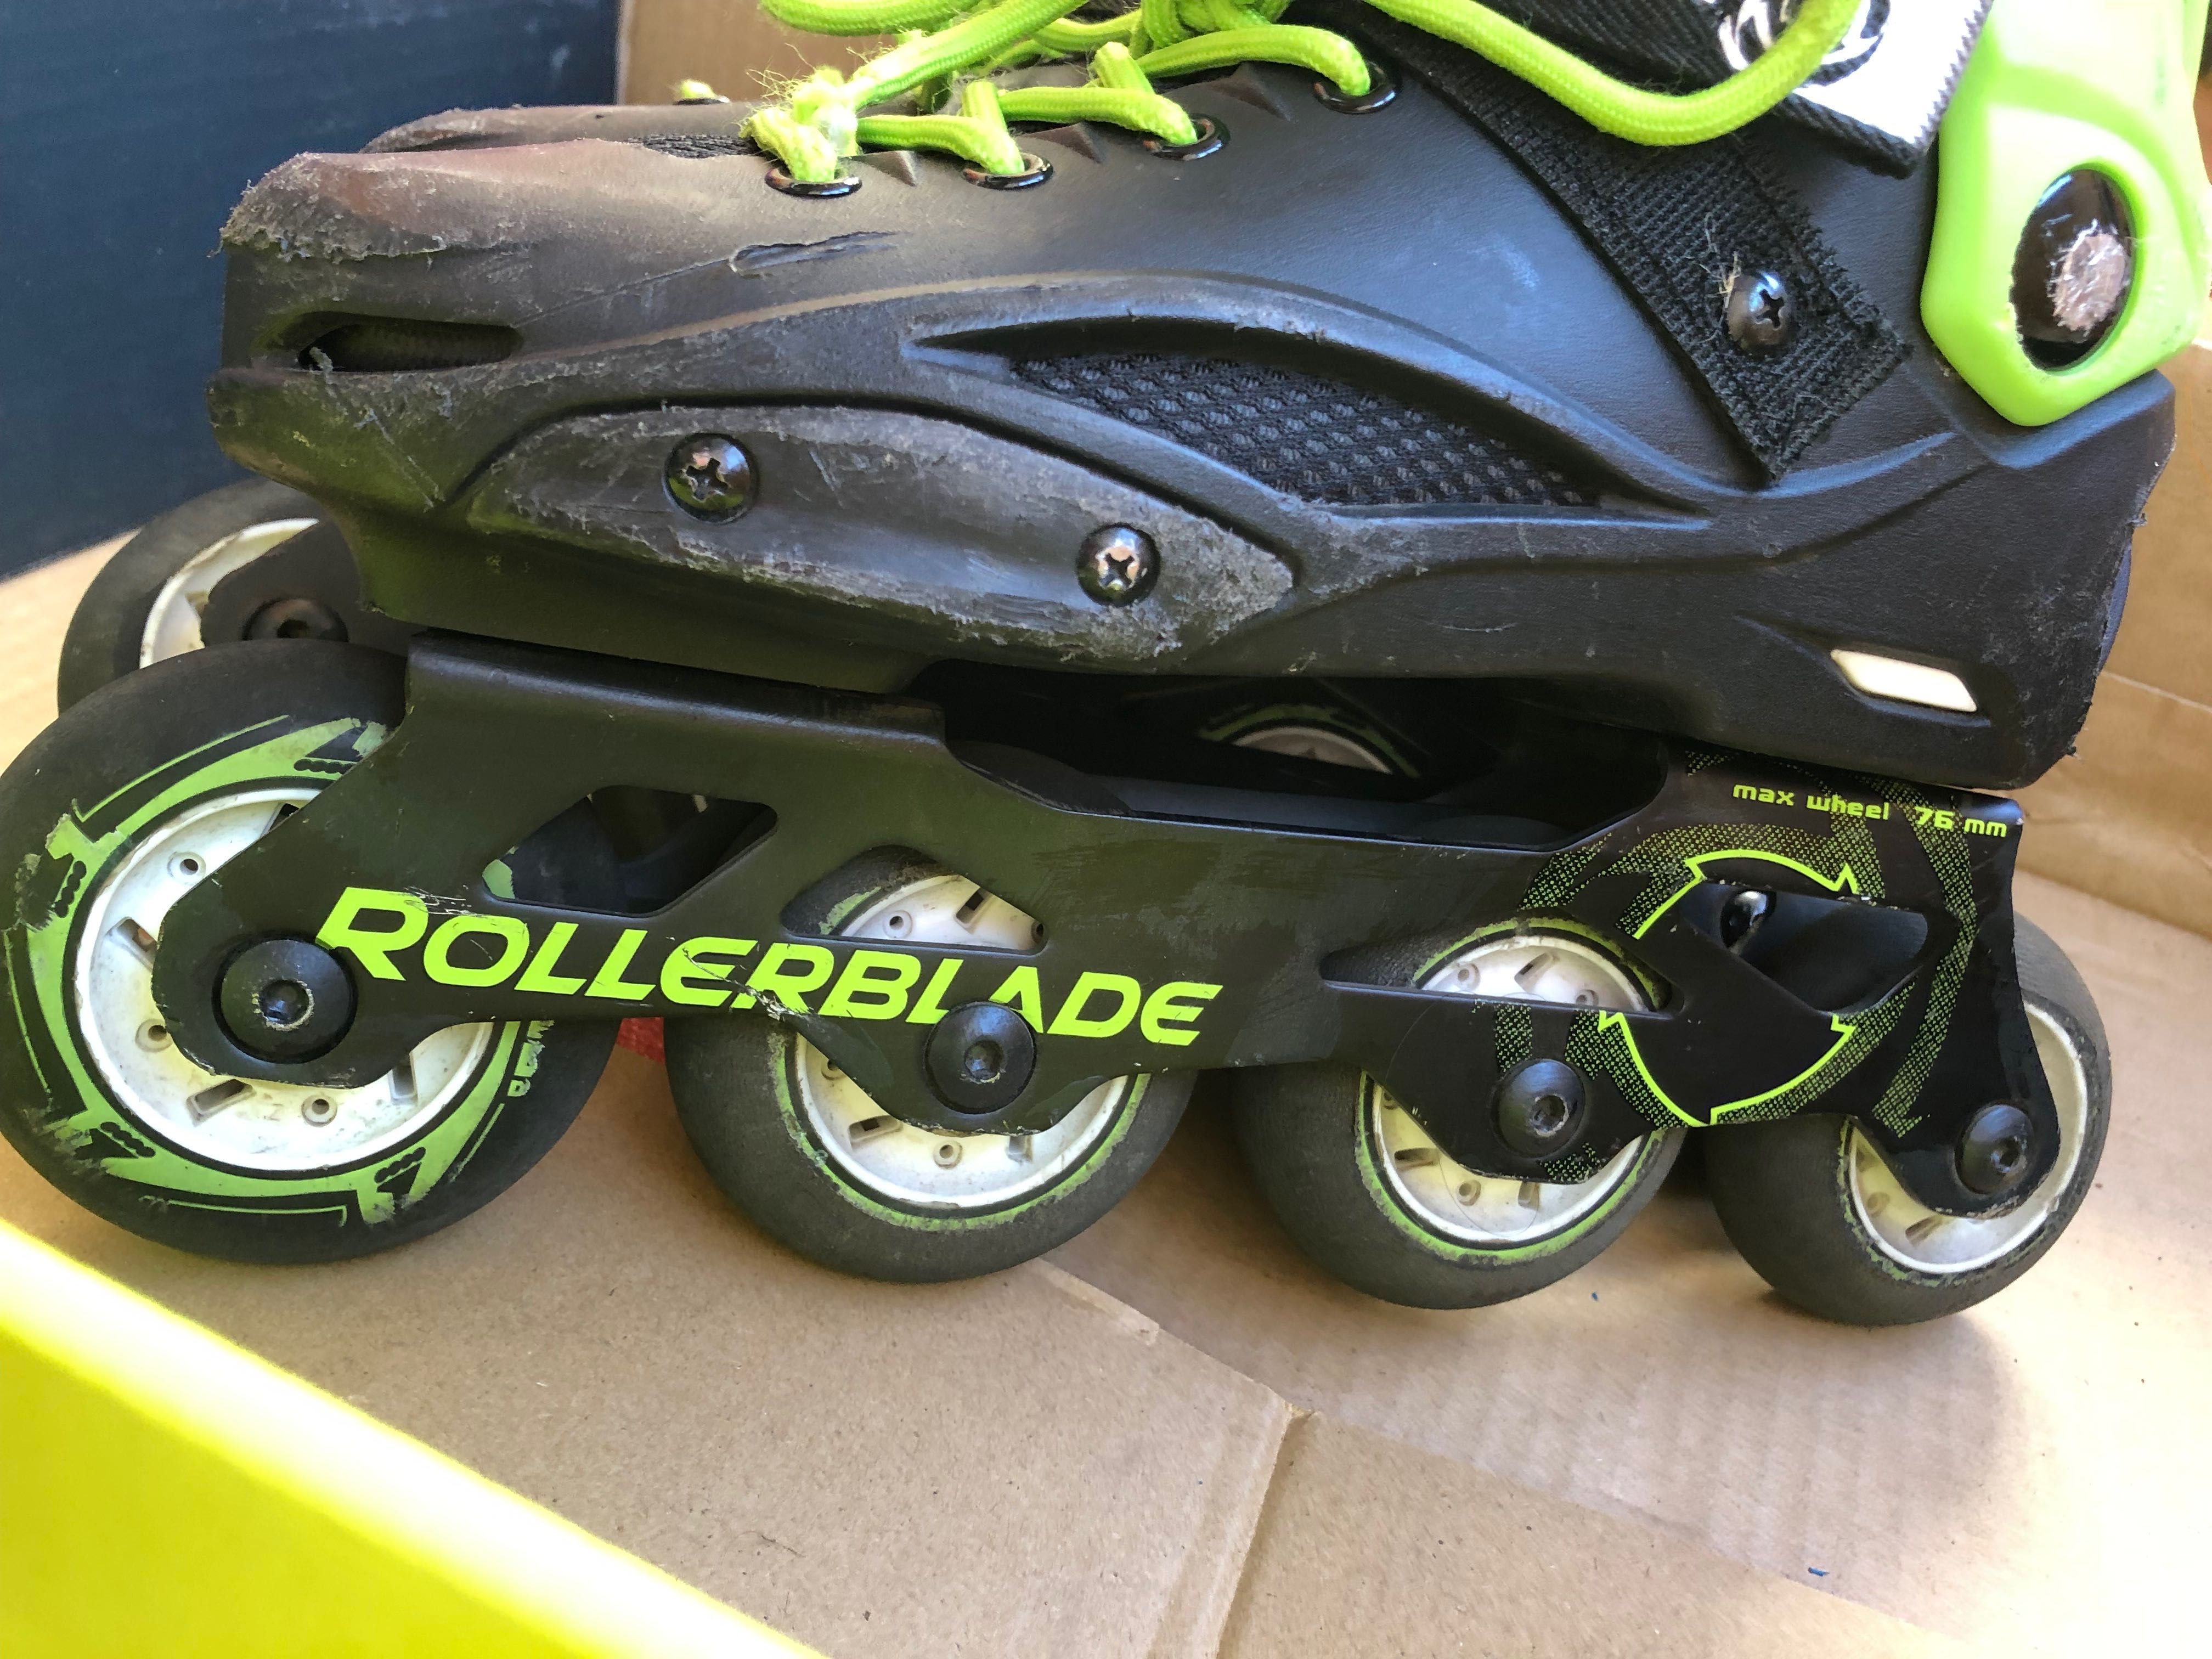 Rollerblade cyclone роликовые коньки размер 35-36.5